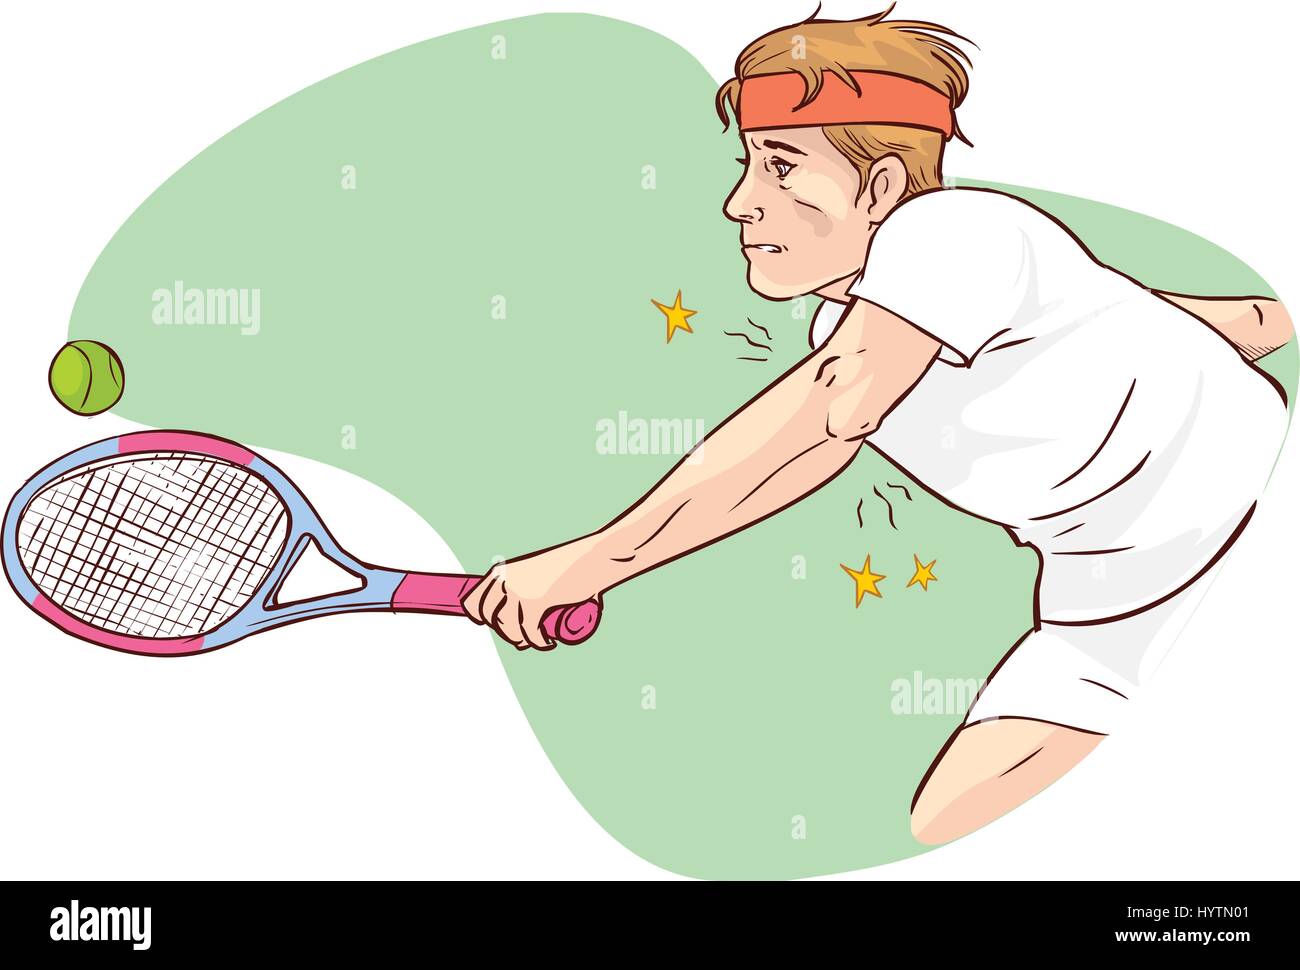 Vektor-Illustration von Tennis-Ellenbogen Stock Vektor